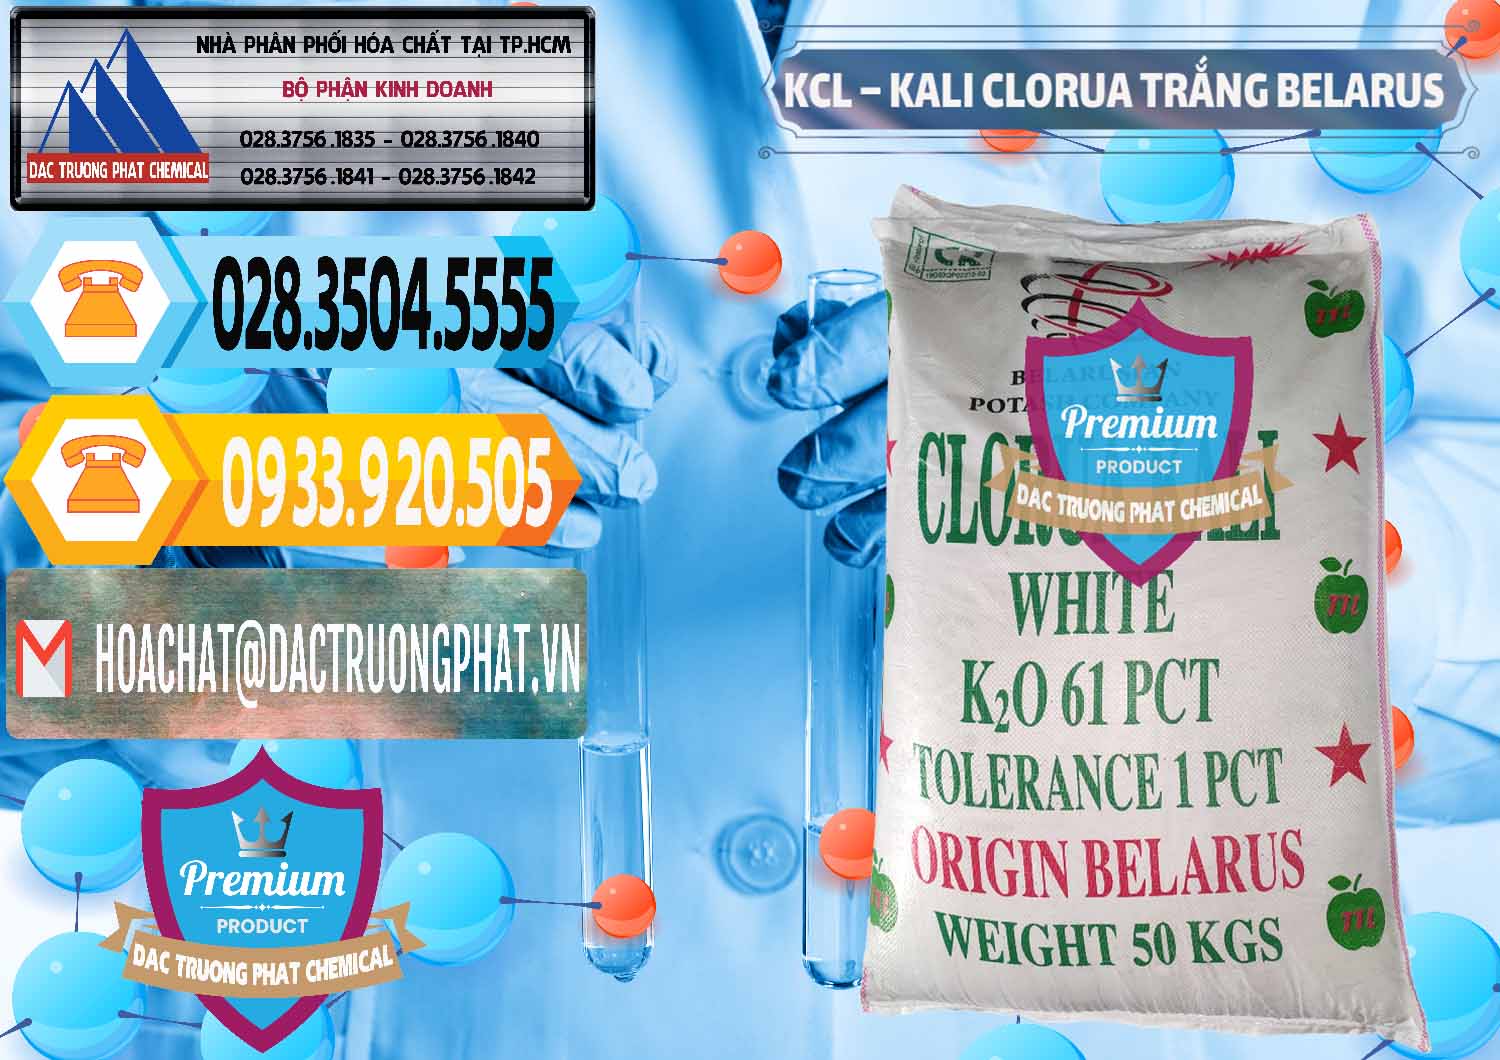 Nhà cung cấp và bán KCL – Kali Clorua Trắng Belarus - 0085 - Cty chuyên kinh doanh & cung cấp hóa chất tại TP.HCM - hoachattayrua.net